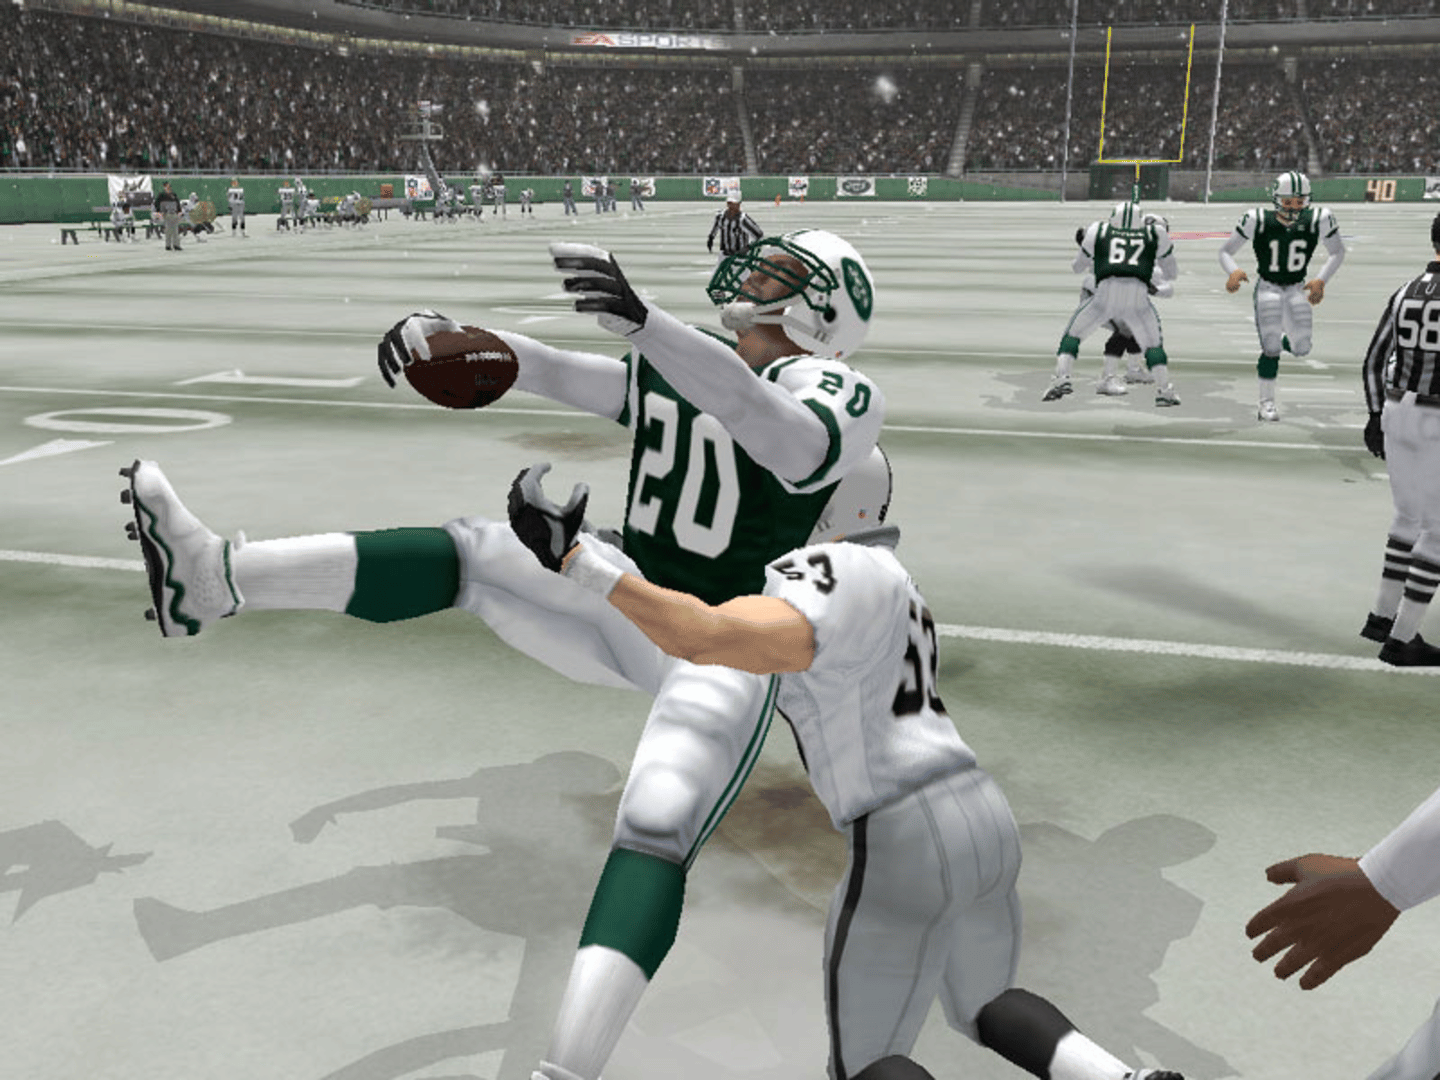 Madden NFL 2004 screenshot